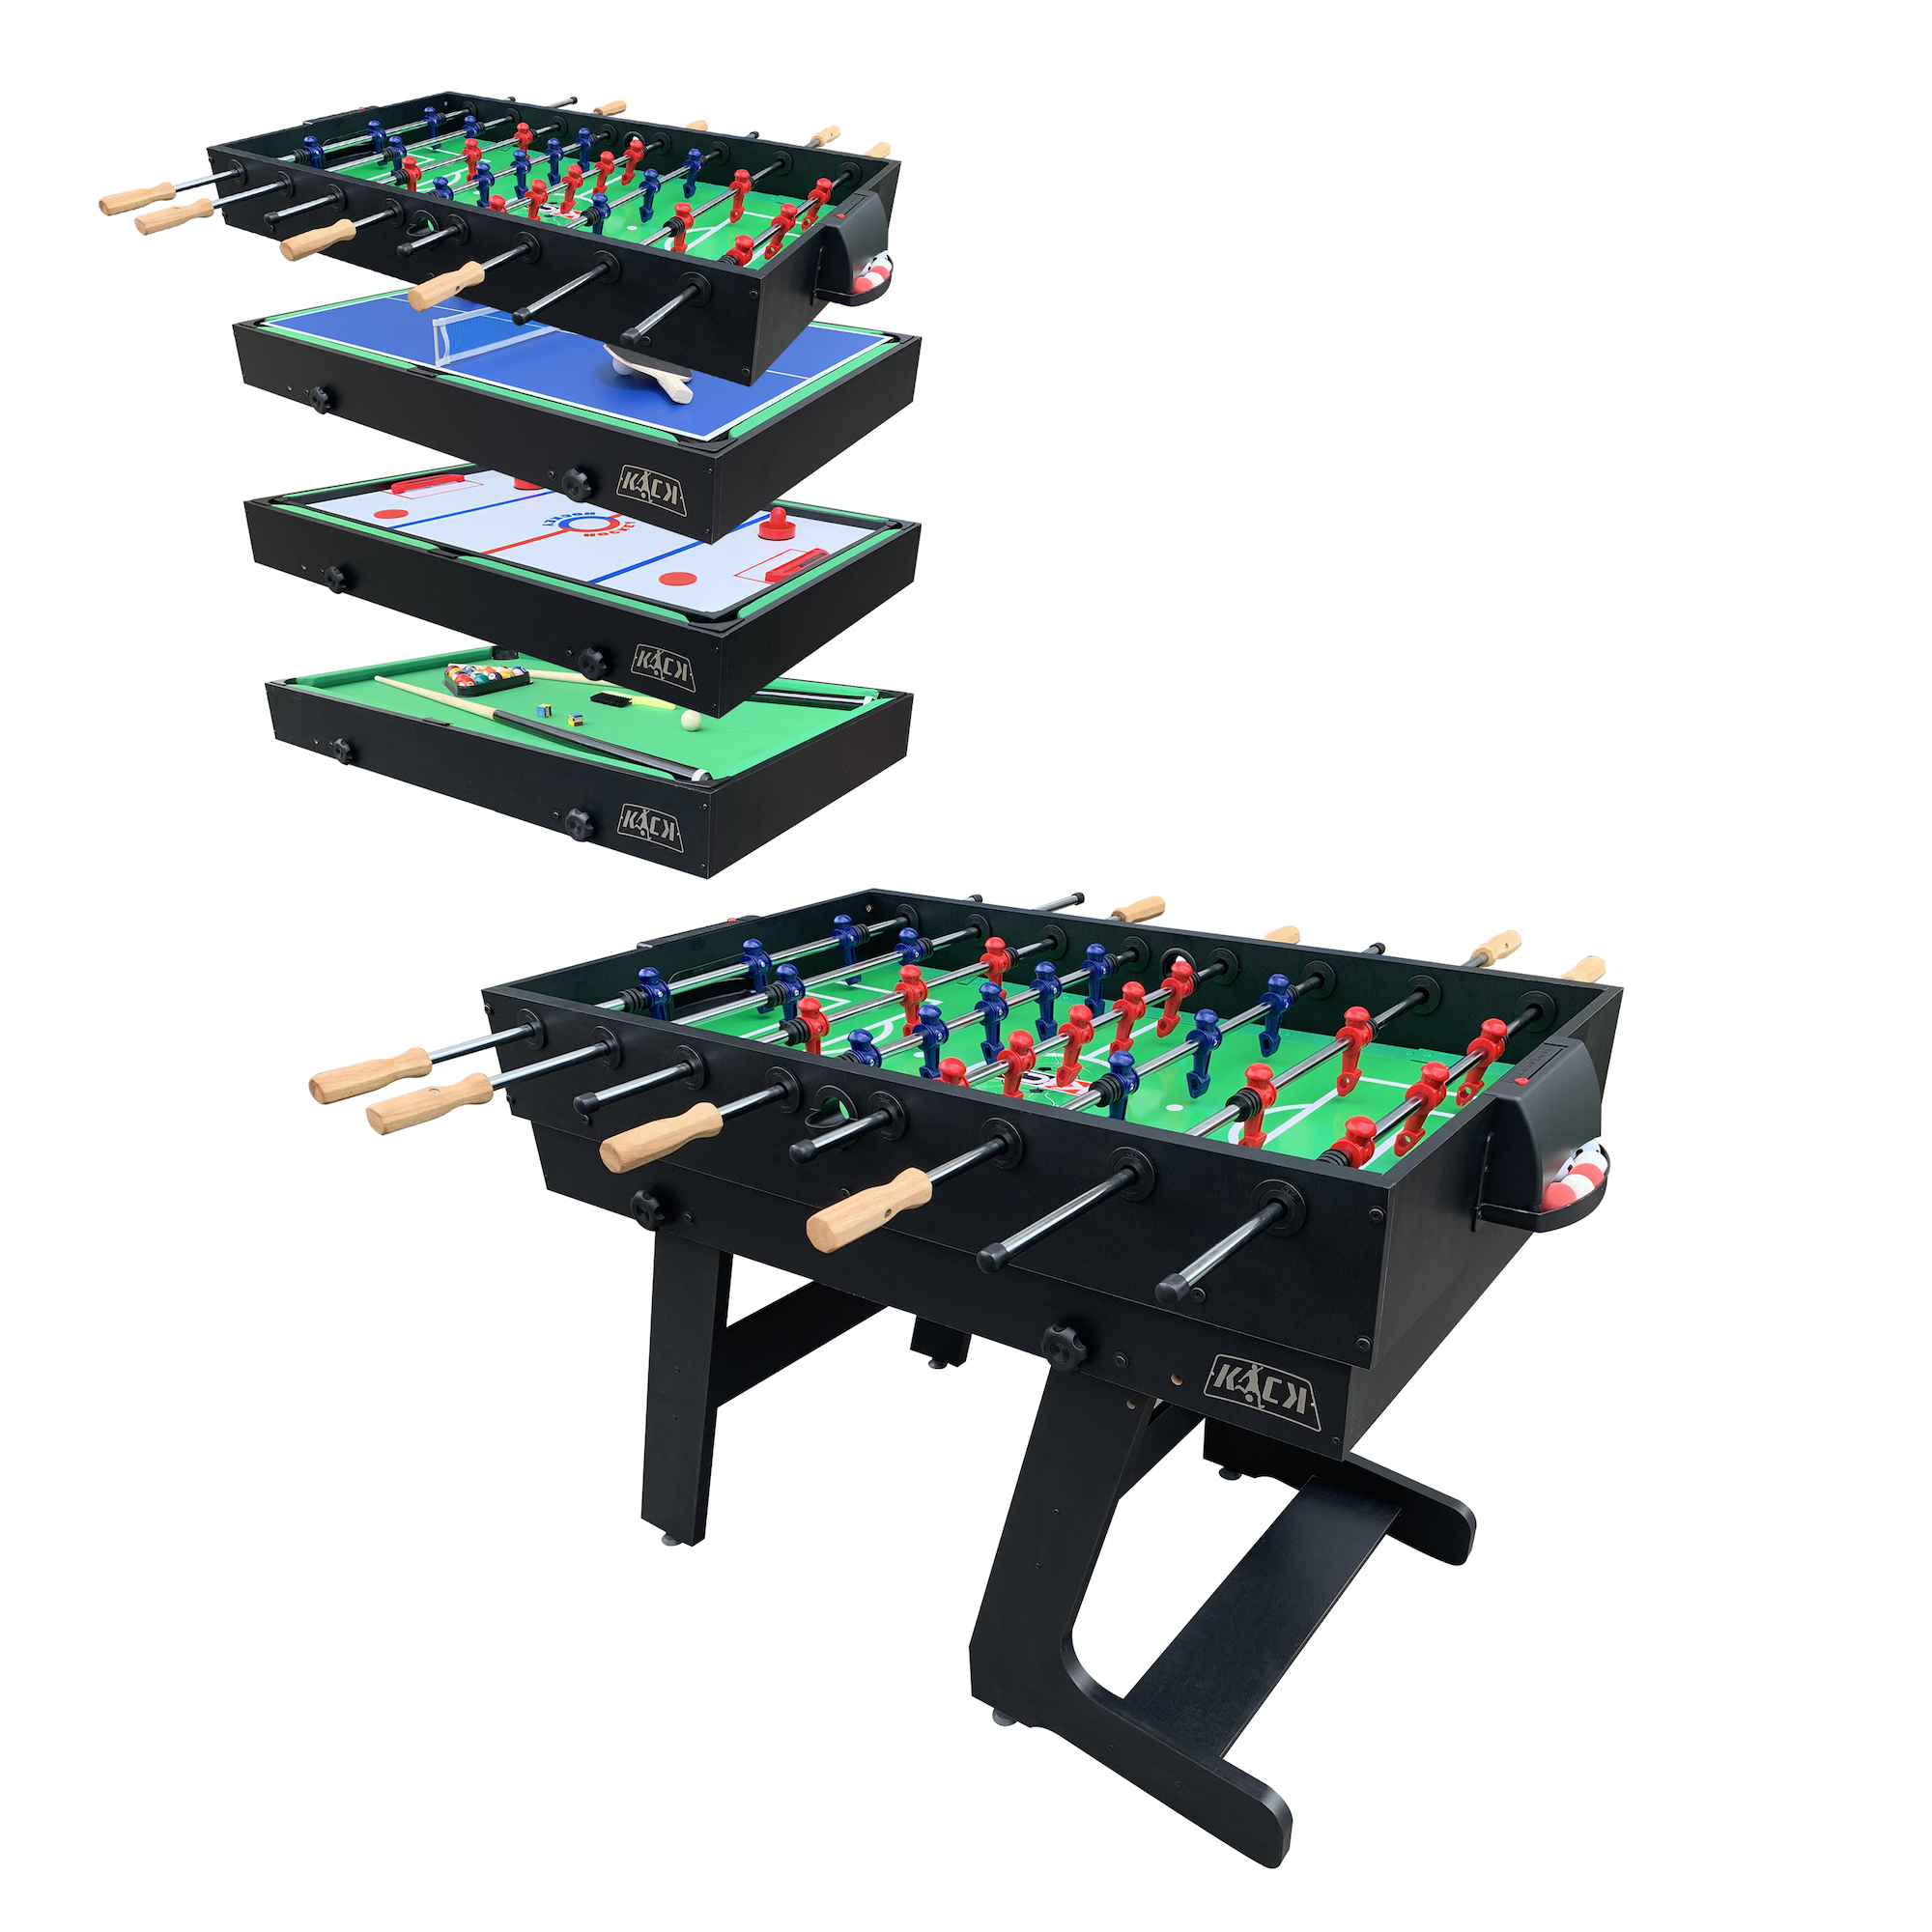 KICK Defender 48 10-in-1 Multi-Game Table (Black)